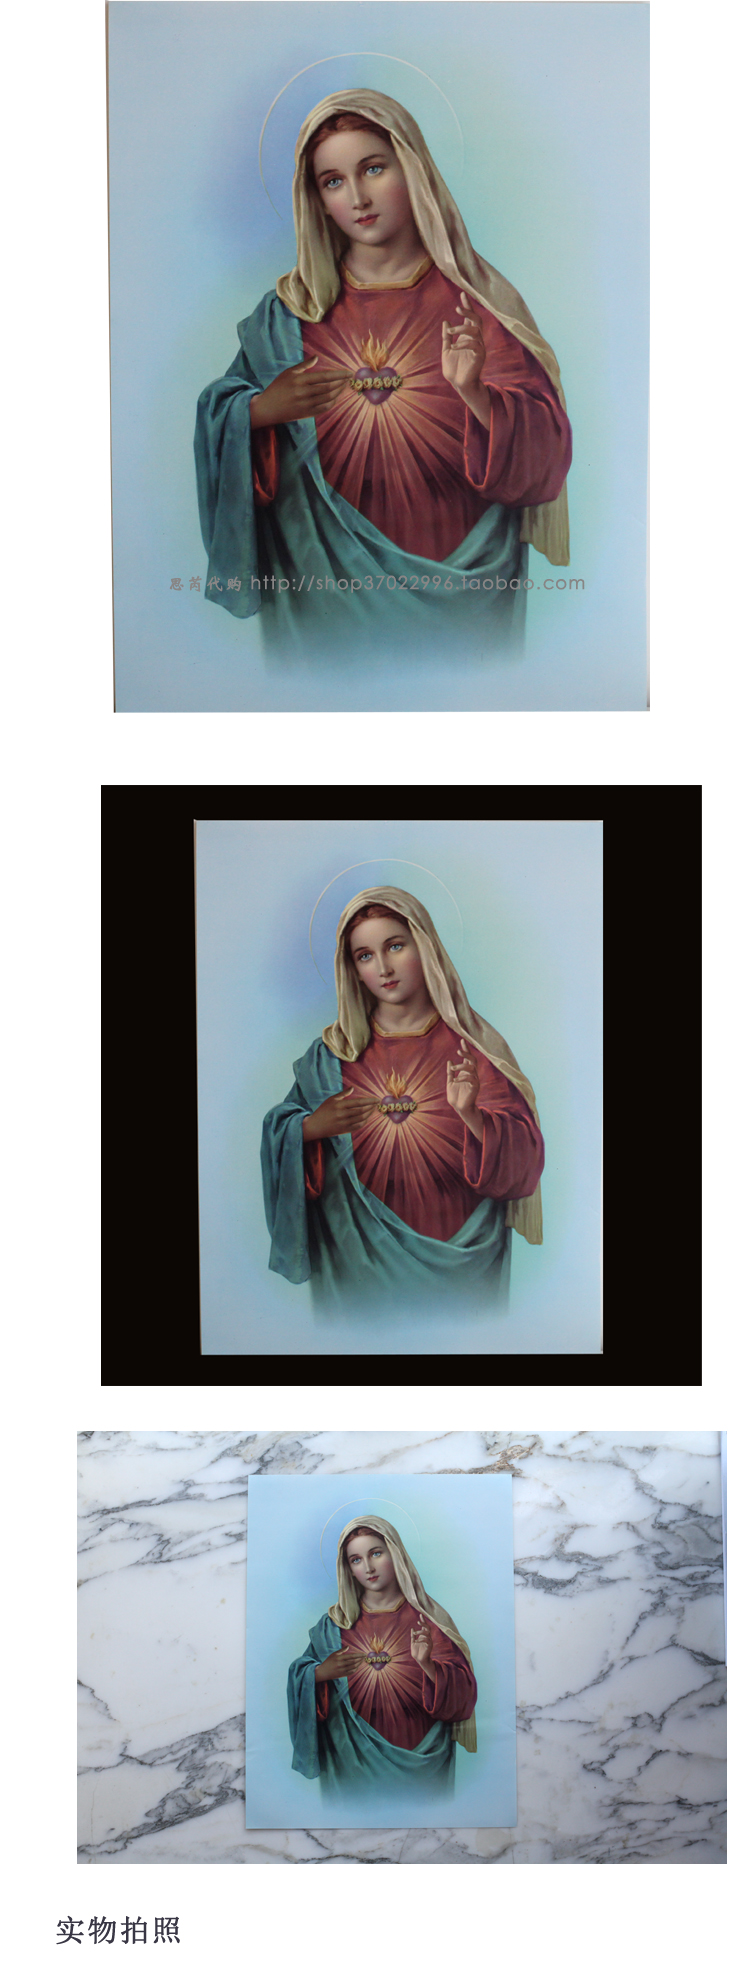 圣母圣心画像 天主教圣物 宗教礼品 进口圣母画像 超精美 厅挂画